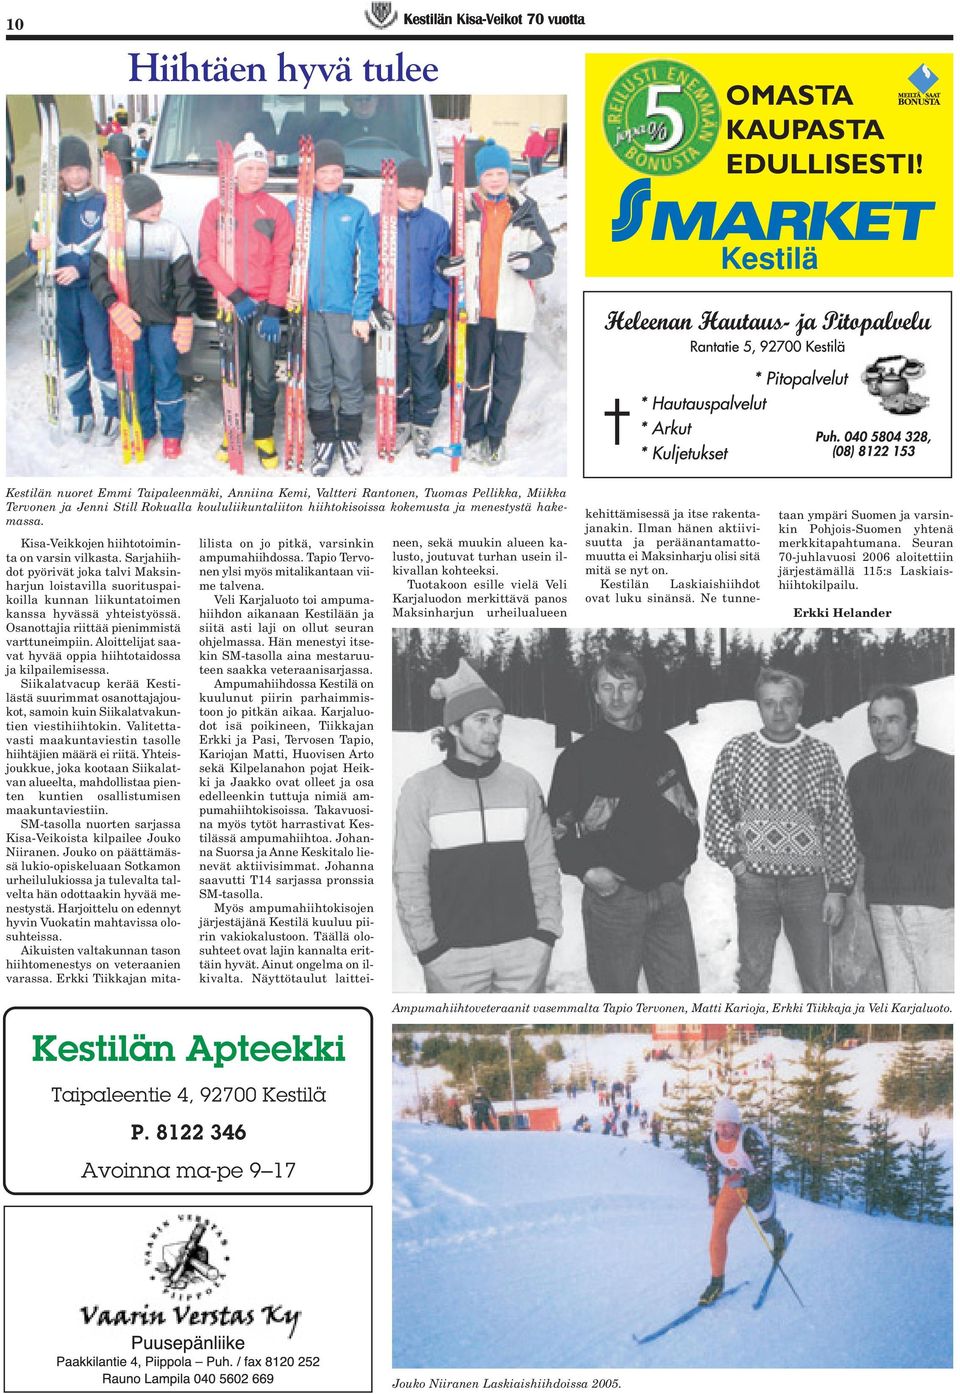 hakemassa. Kisa-Veikkojen hiihtotoiminta on varsin vilkasta. Sarjahiihdot pyörivät joka talvi Maksinharjun loistavilla suorituspaikoilla kunnan liikuntatoimen kanssa hyvässä yhteistyössä.